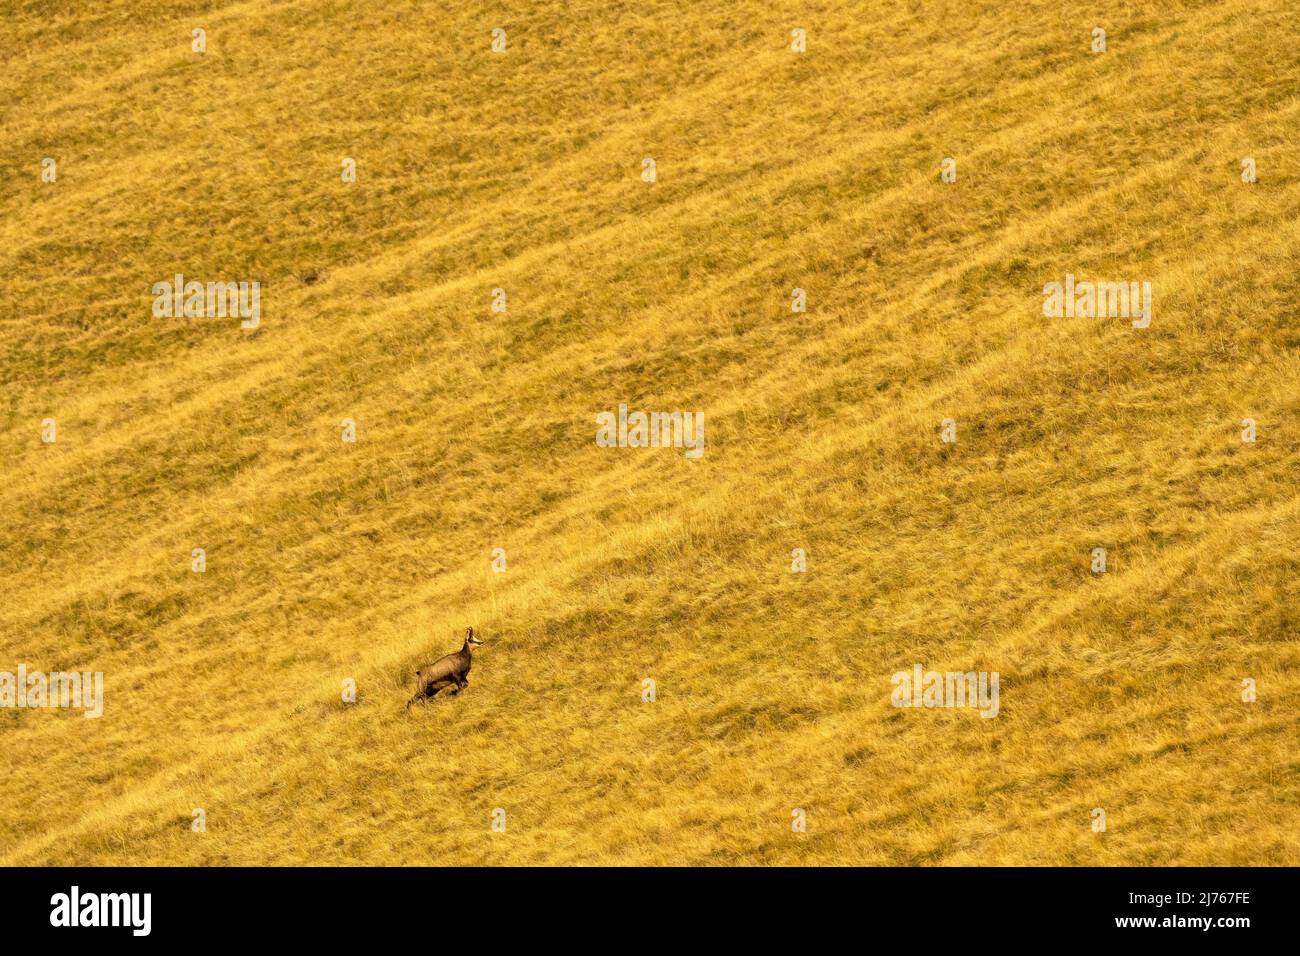 Une chamois en course sur une pente de montagne avec prairie à la fin de l'été Banque D'Images